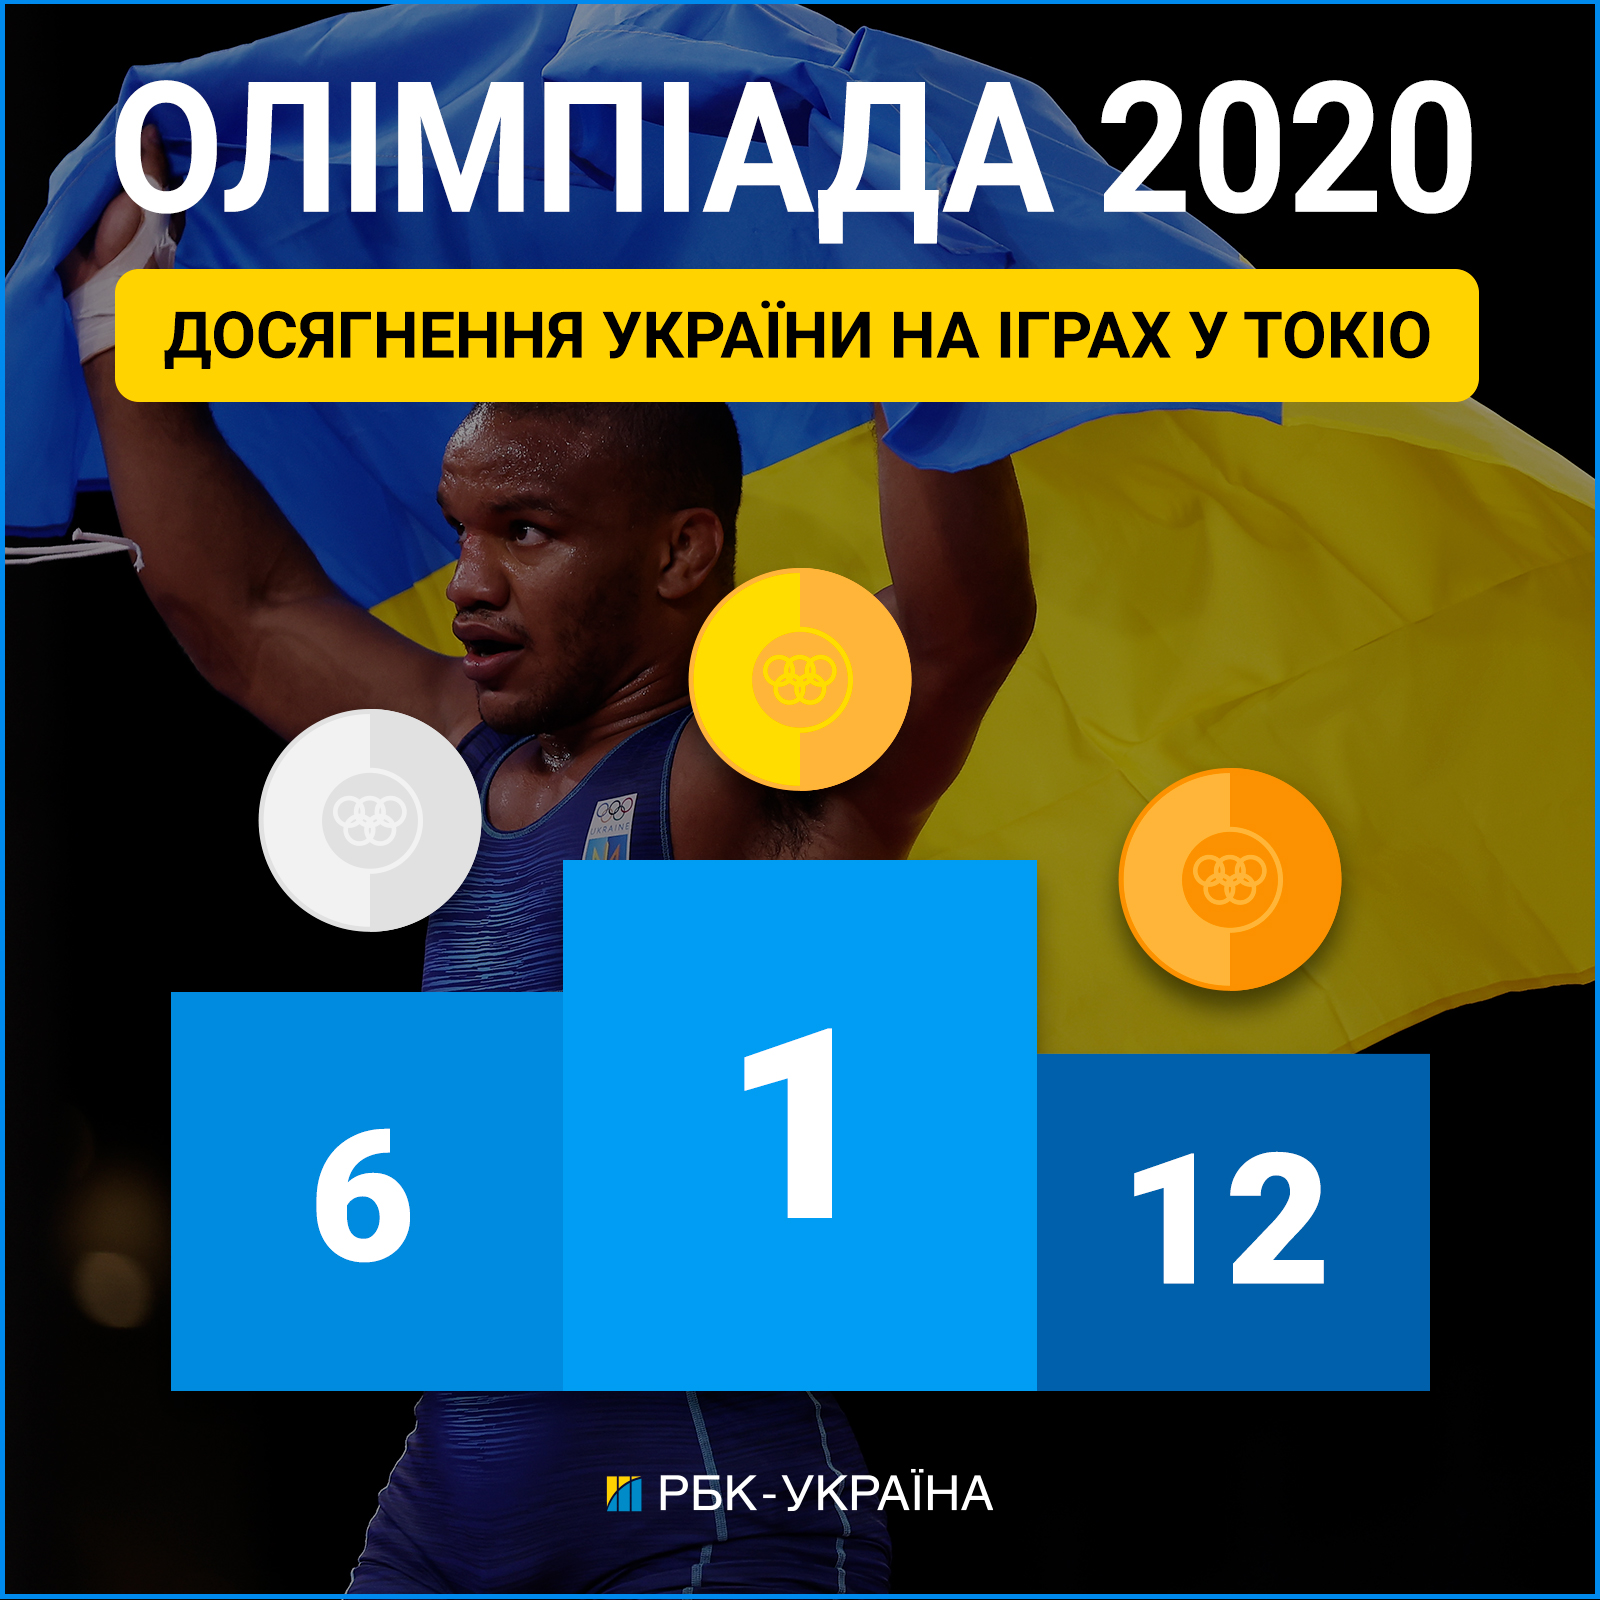 Украина на Олимпиаде-2020: сколько завоевали медалей